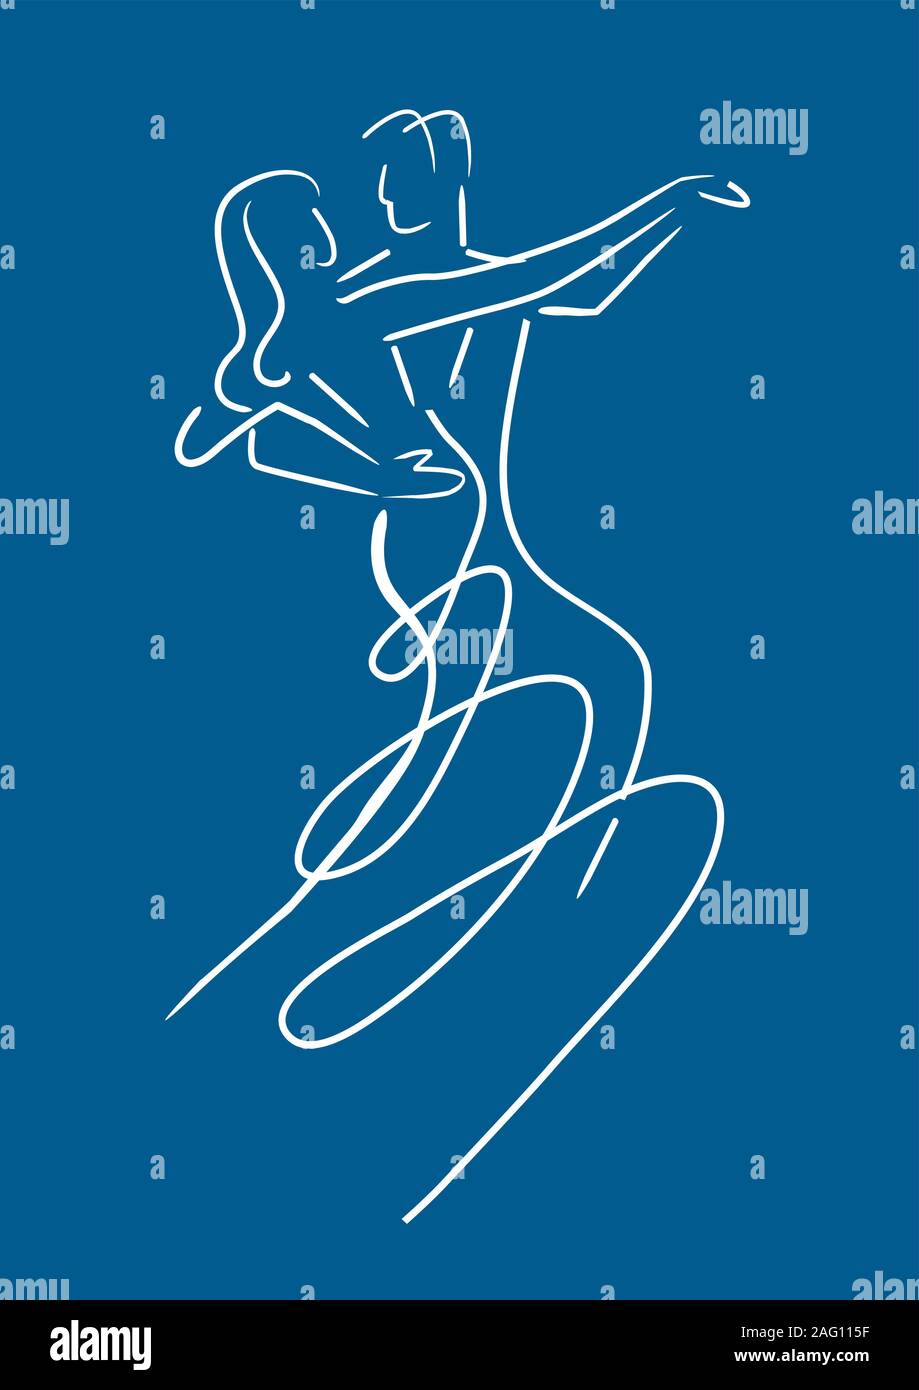 Couple de danseurs Balroom ev. L'art de la ligne de l'illustration stylisée de danse de bal danse de couple sur fond bleu. Vector disponibles. Illustration de Vecteur